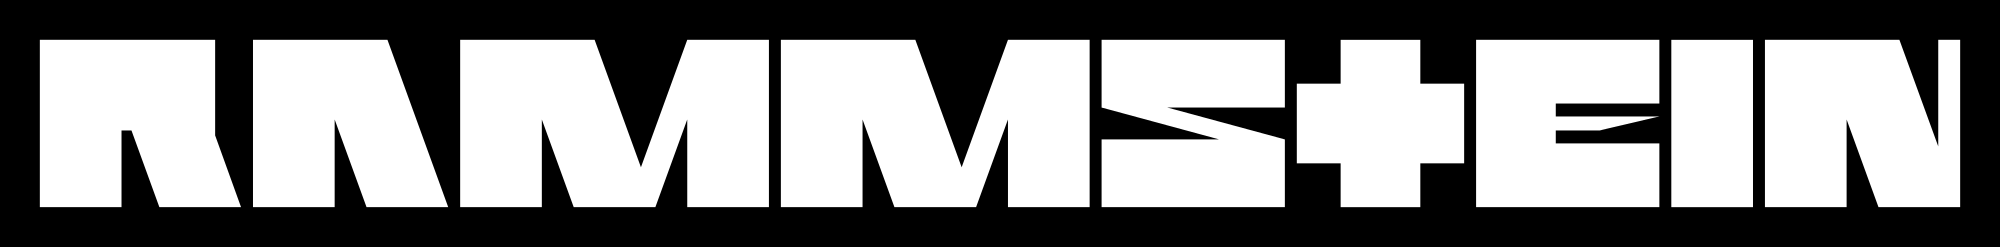 2000px-Rammstein_logo_3.svg